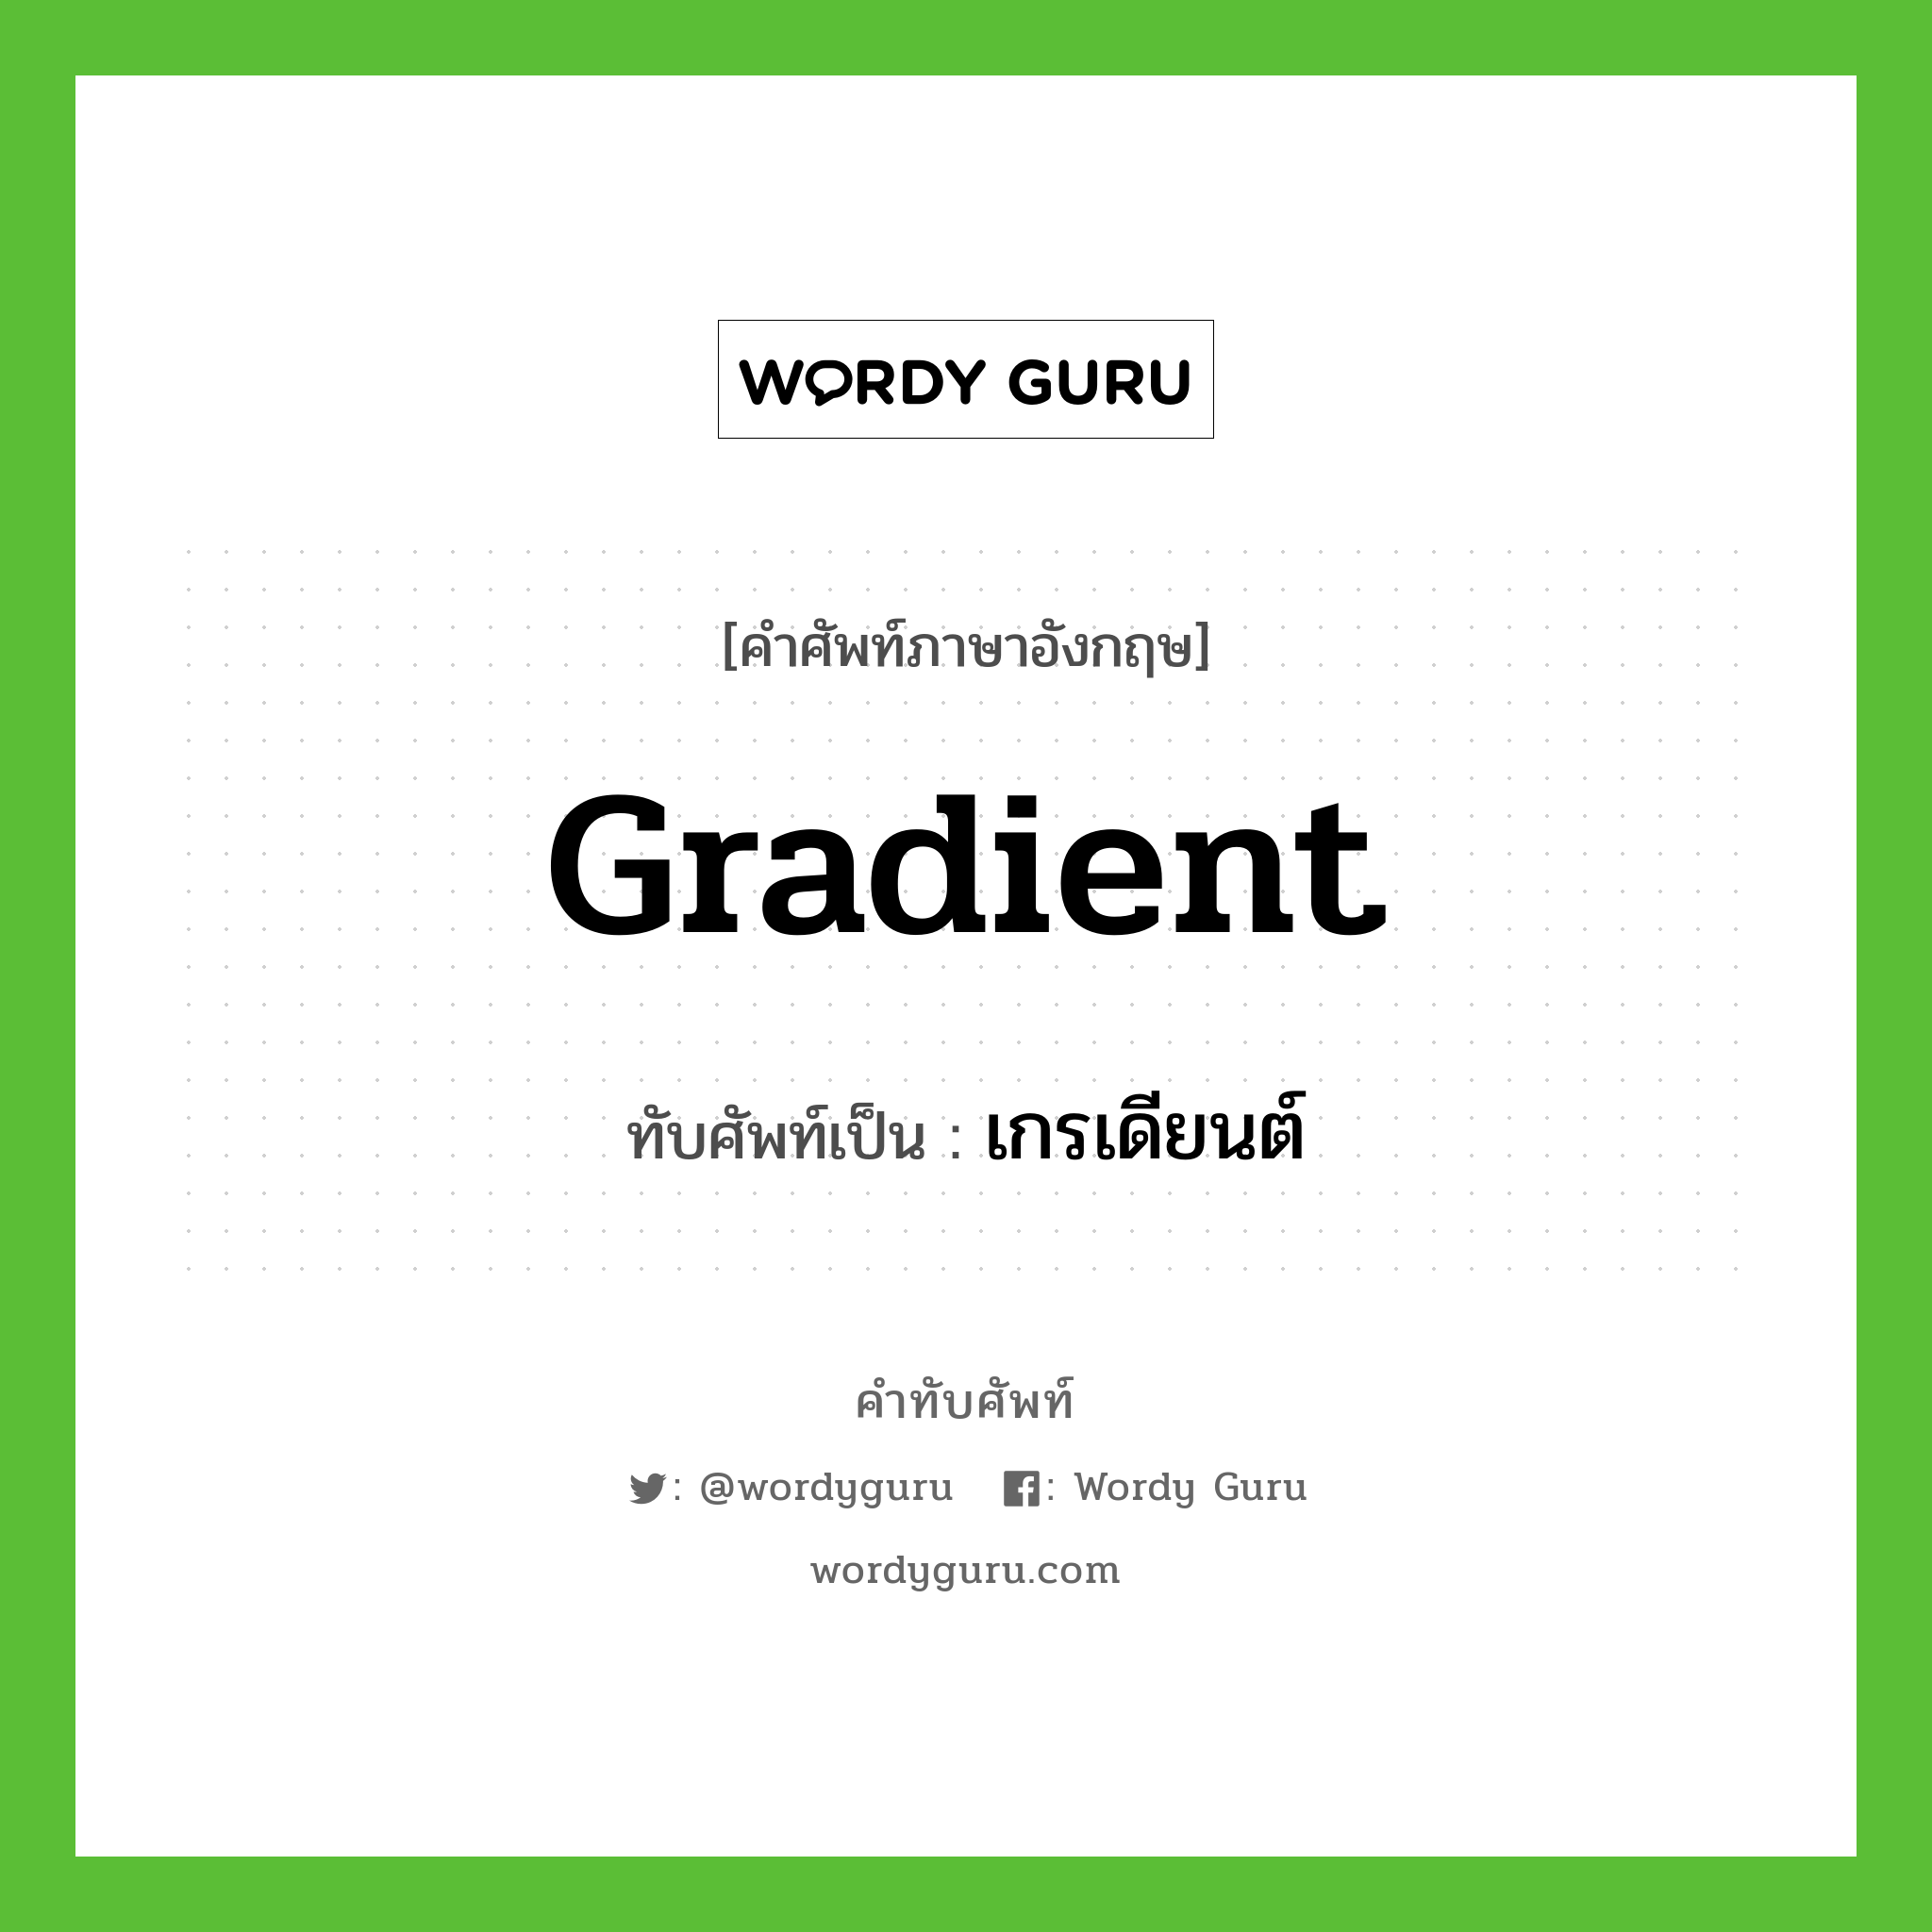 gradient เขียนเป็นคำไทยว่าอะไร?, คำศัพท์ภาษาอังกฤษ gradient ทับศัพท์เป็น เกรเดียนต์